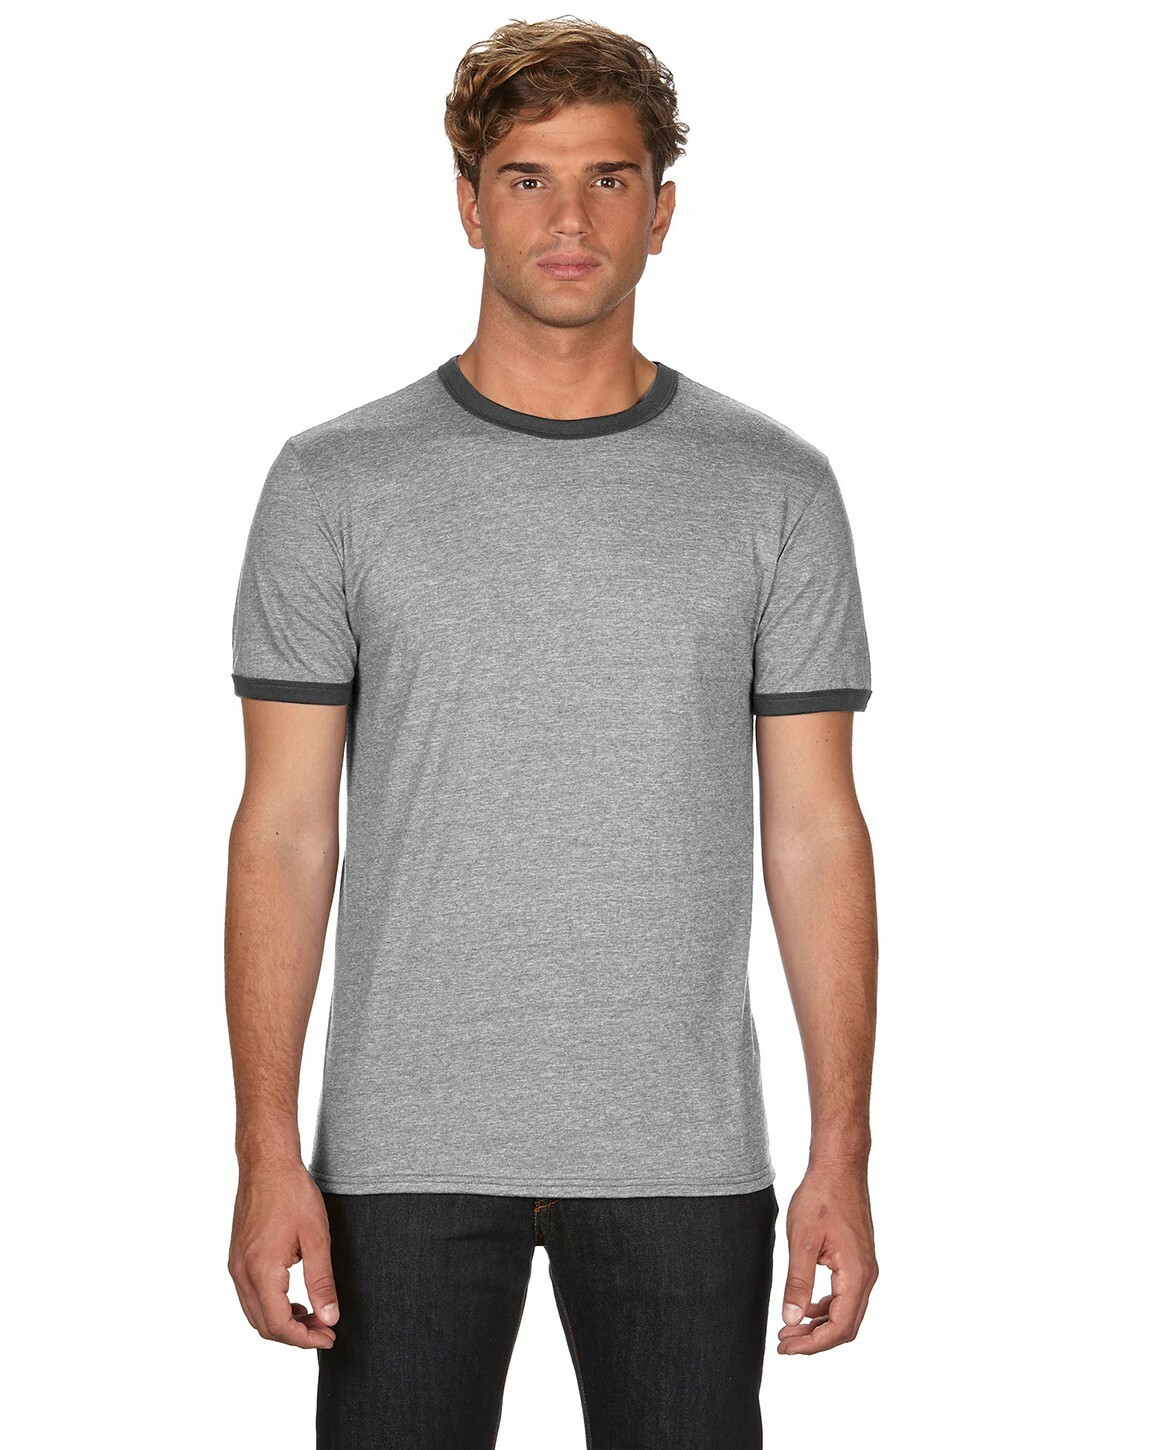 Anvil 988AN Lightweight Ringer T-Shirt | Buy Blank or Print Logo